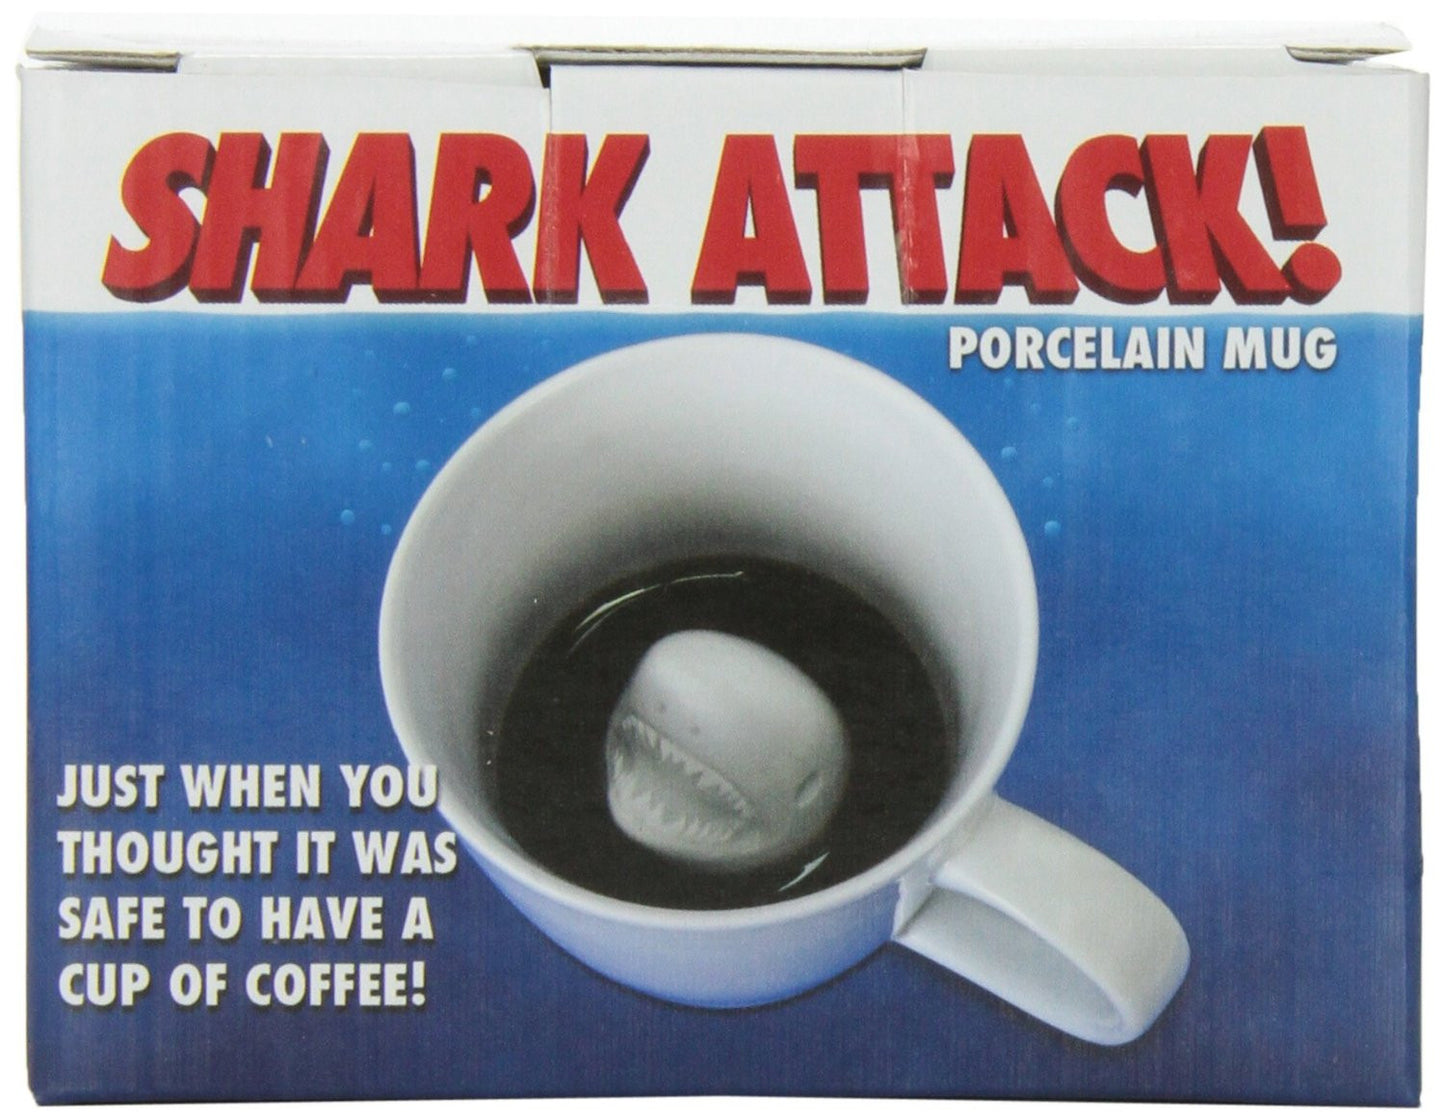 Shark Attack Mug - OddGifts.com